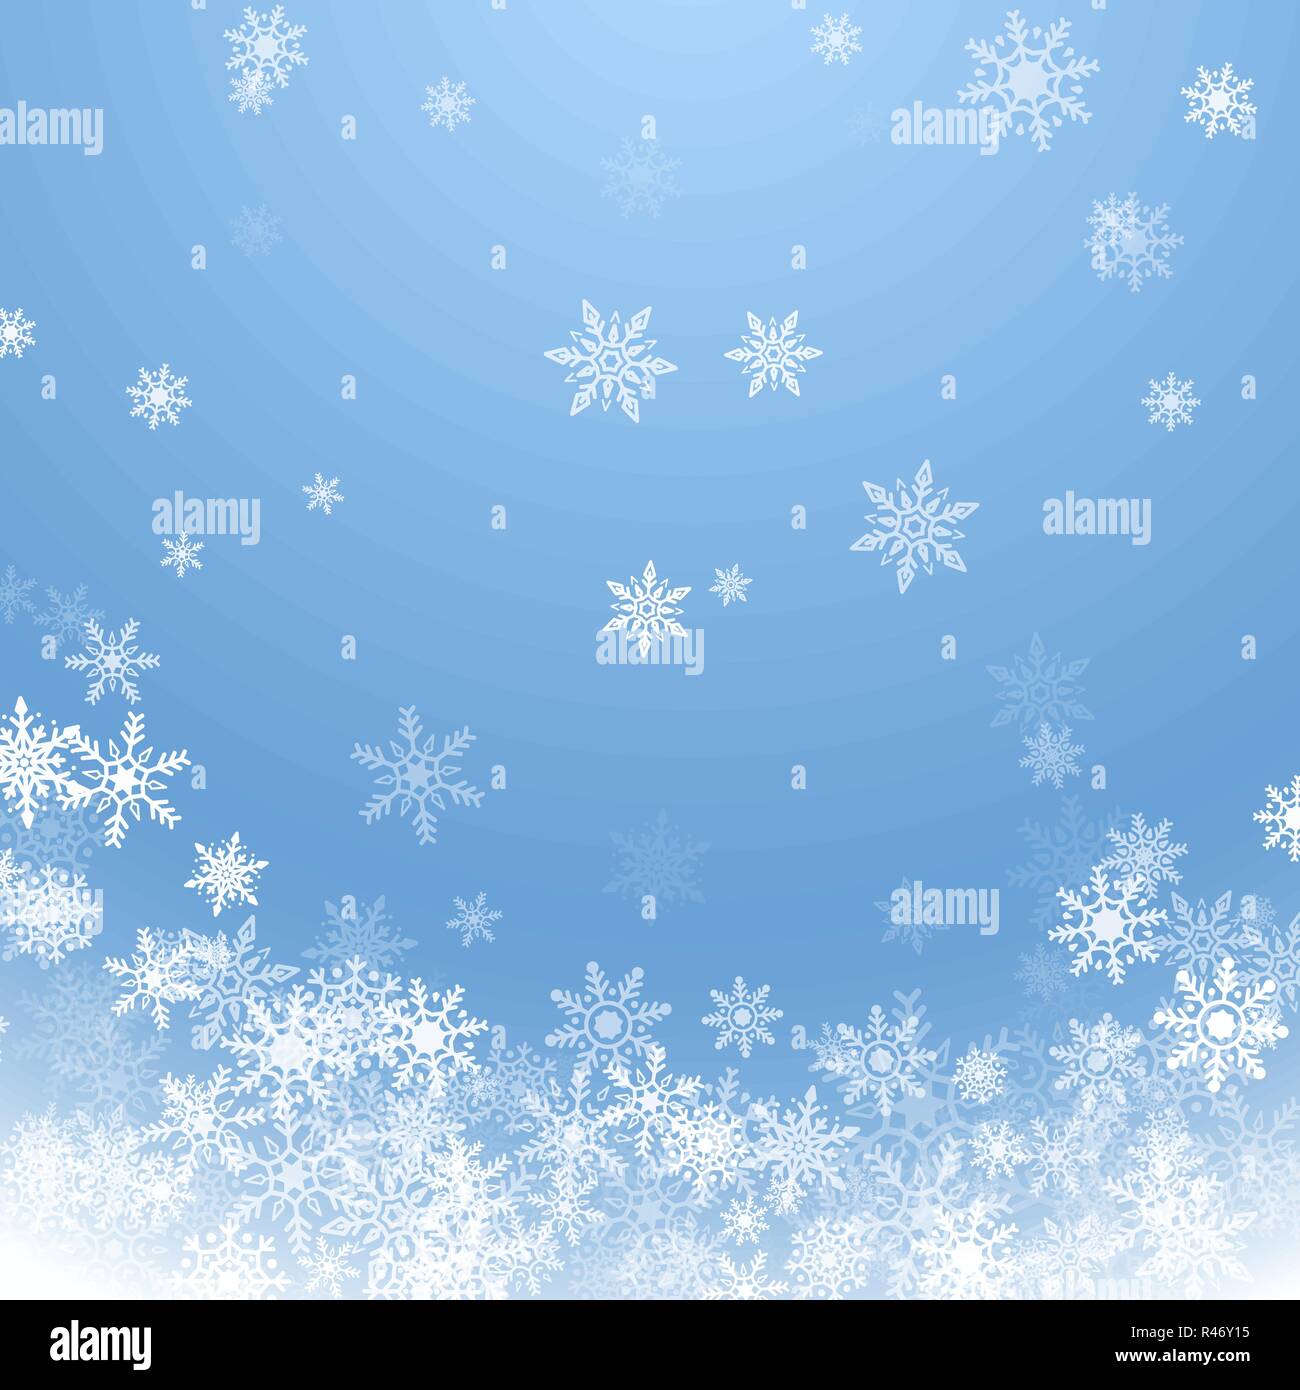 Urlaub Winter Hintergrund für frohe Weihnachten und ein glückliches Neues Jahr. Schneeflocken fallen weiß auf blauem Hintergrund. Winter blauer Himmel mit fallenden Schnee. Vect Stock Vektor